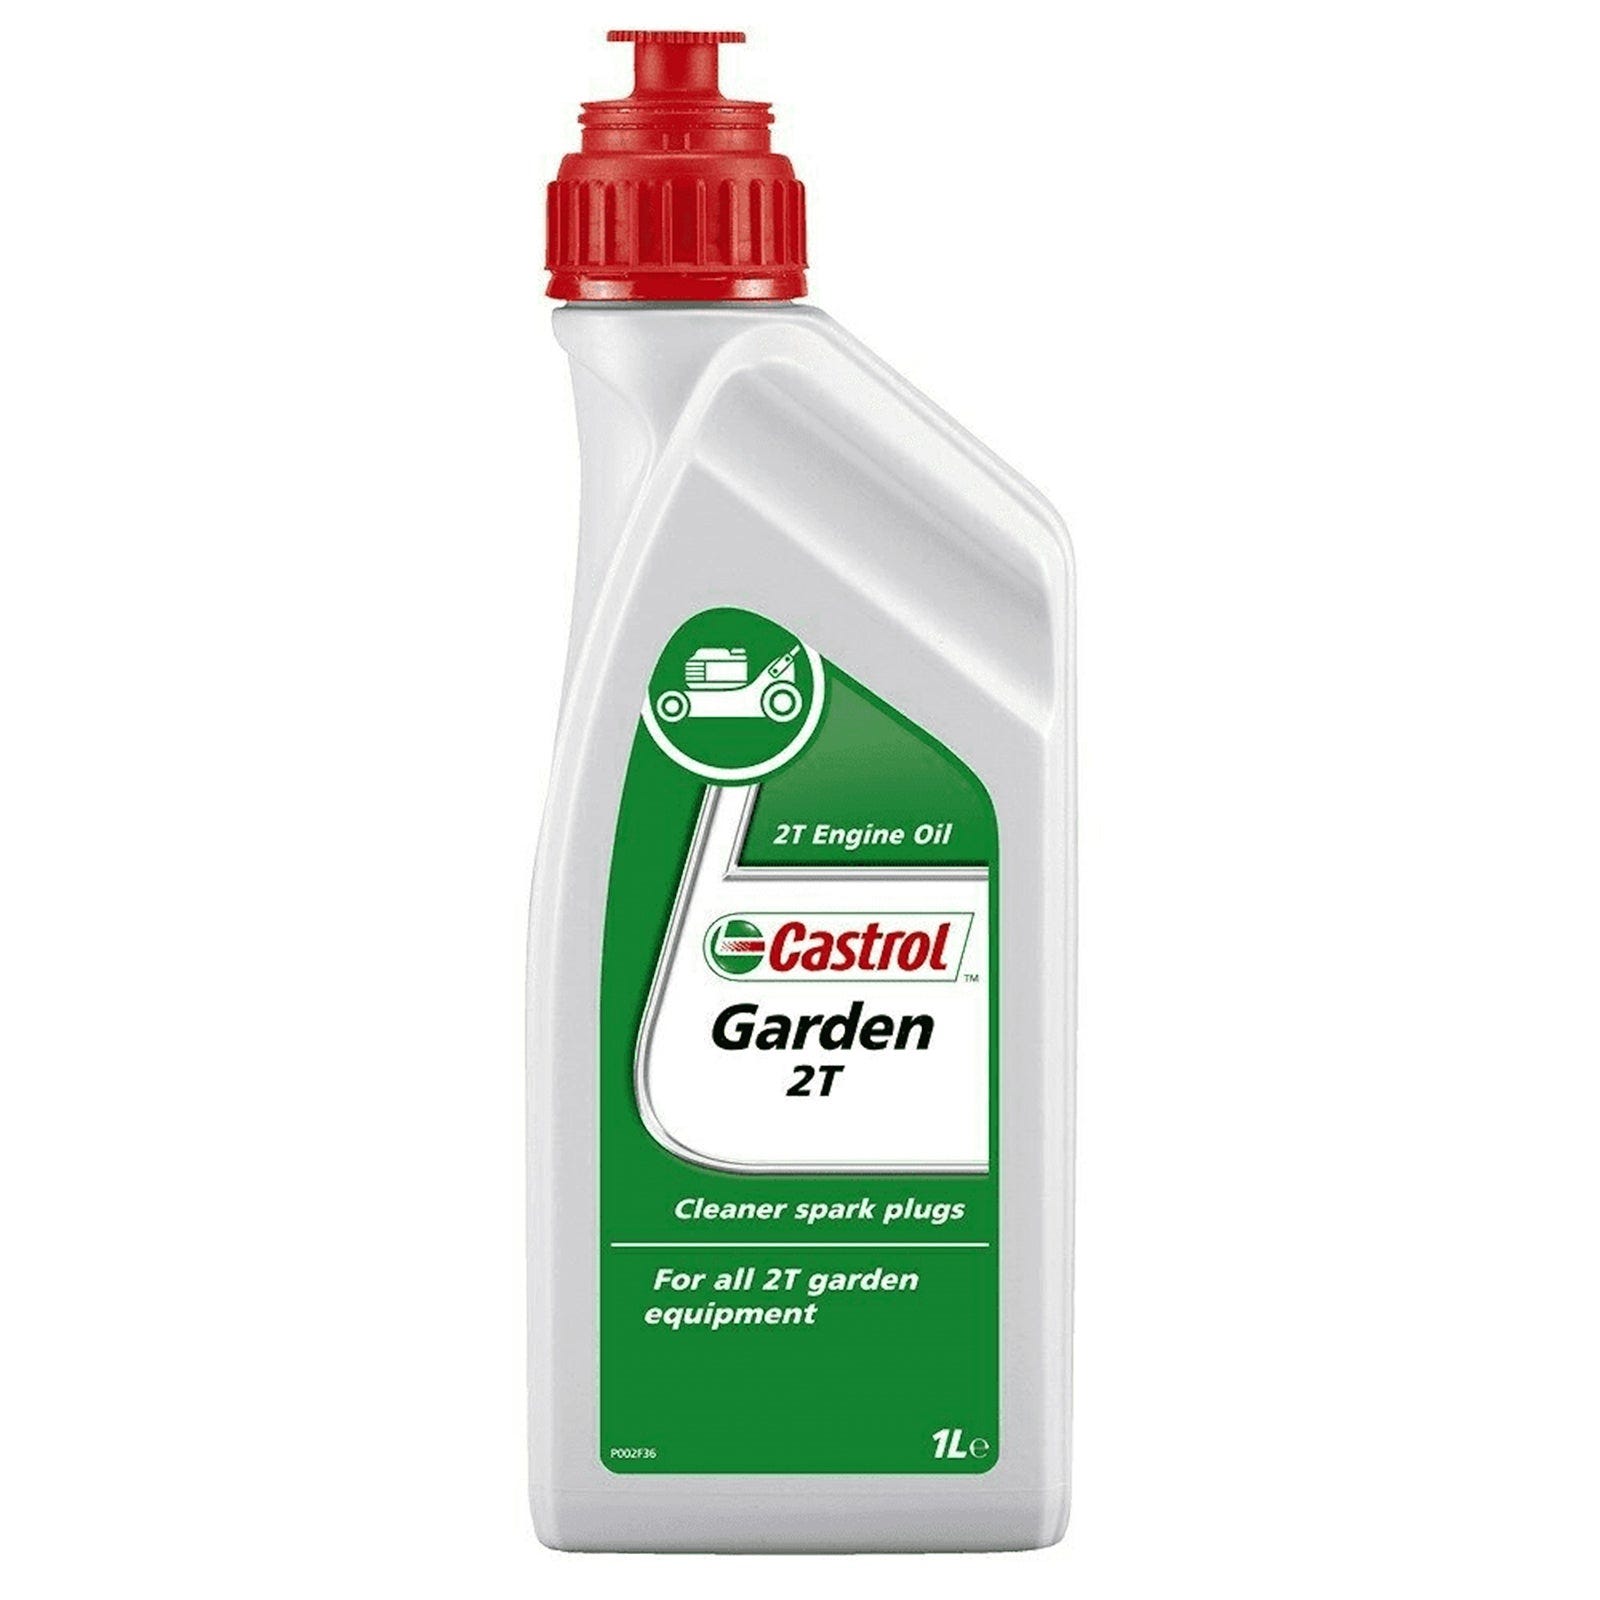 Utilizzo olio bianco - Domande e Risposte Giardinaggio